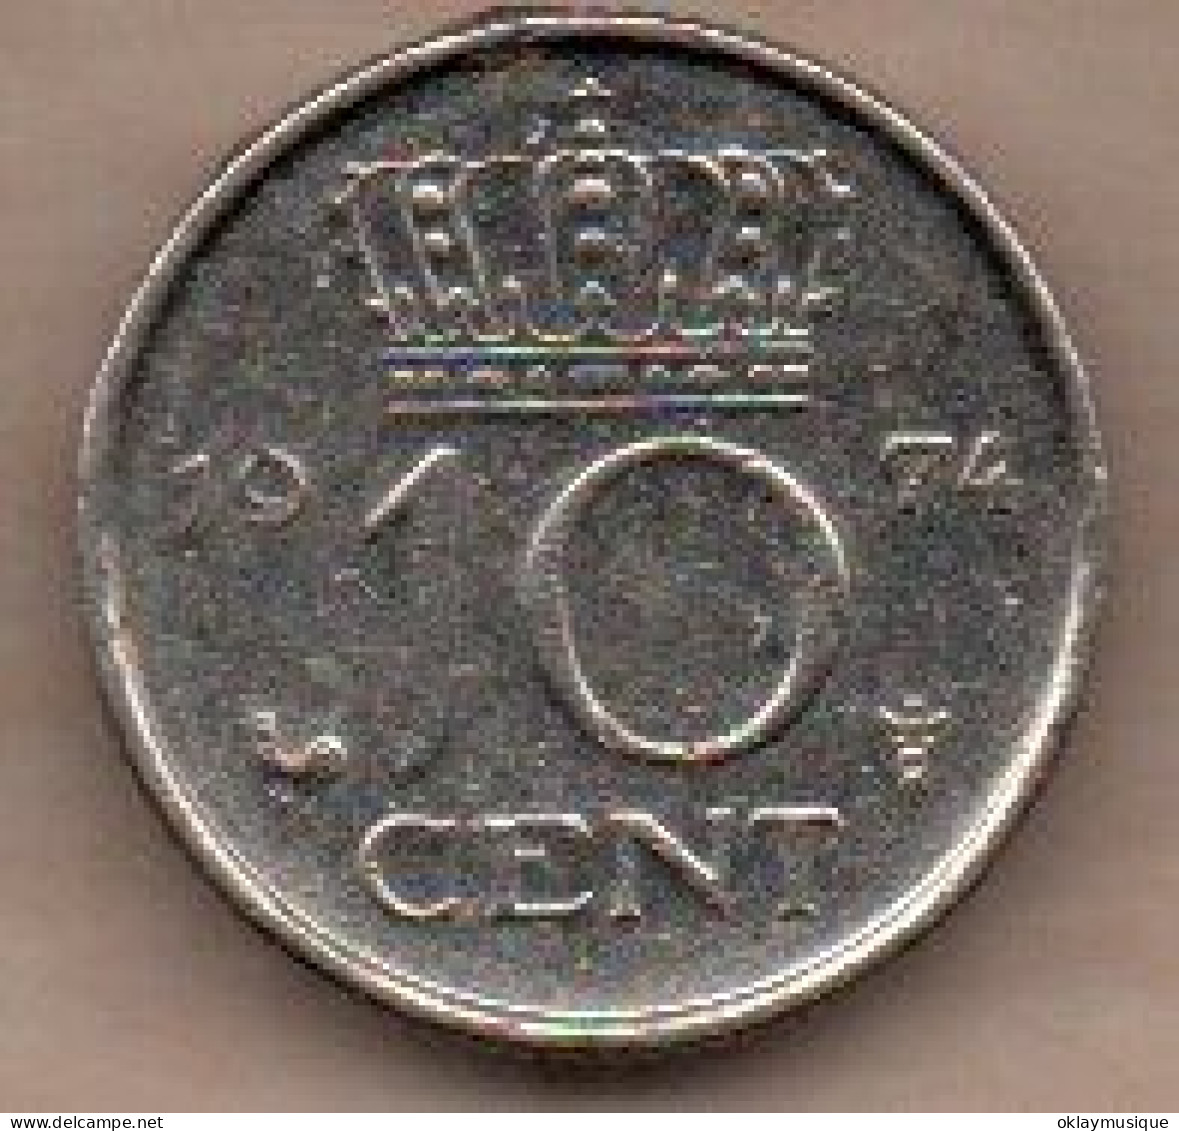 10 Cents 1974 - 10 Cent